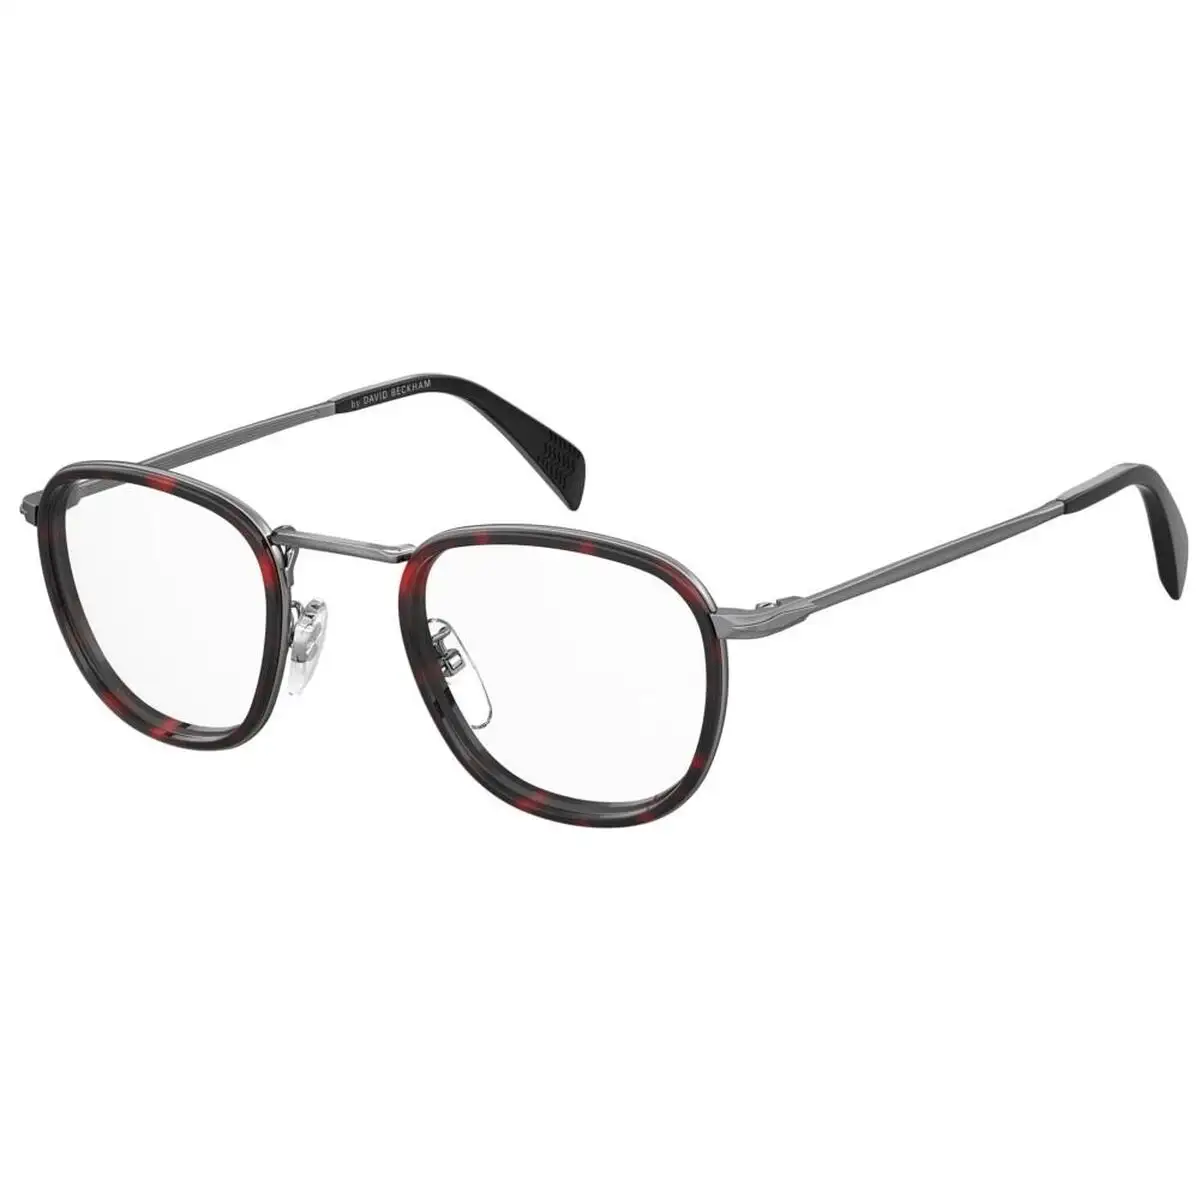 Monture de lunettes homme david beckham db 1025_5479. DIAYTAR SENEGAL - L'Art du Shopping Distinctif. Naviguez à travers notre gamme soigneusement sélectionnée et choisissez des produits qui définissent votre mode de vie.